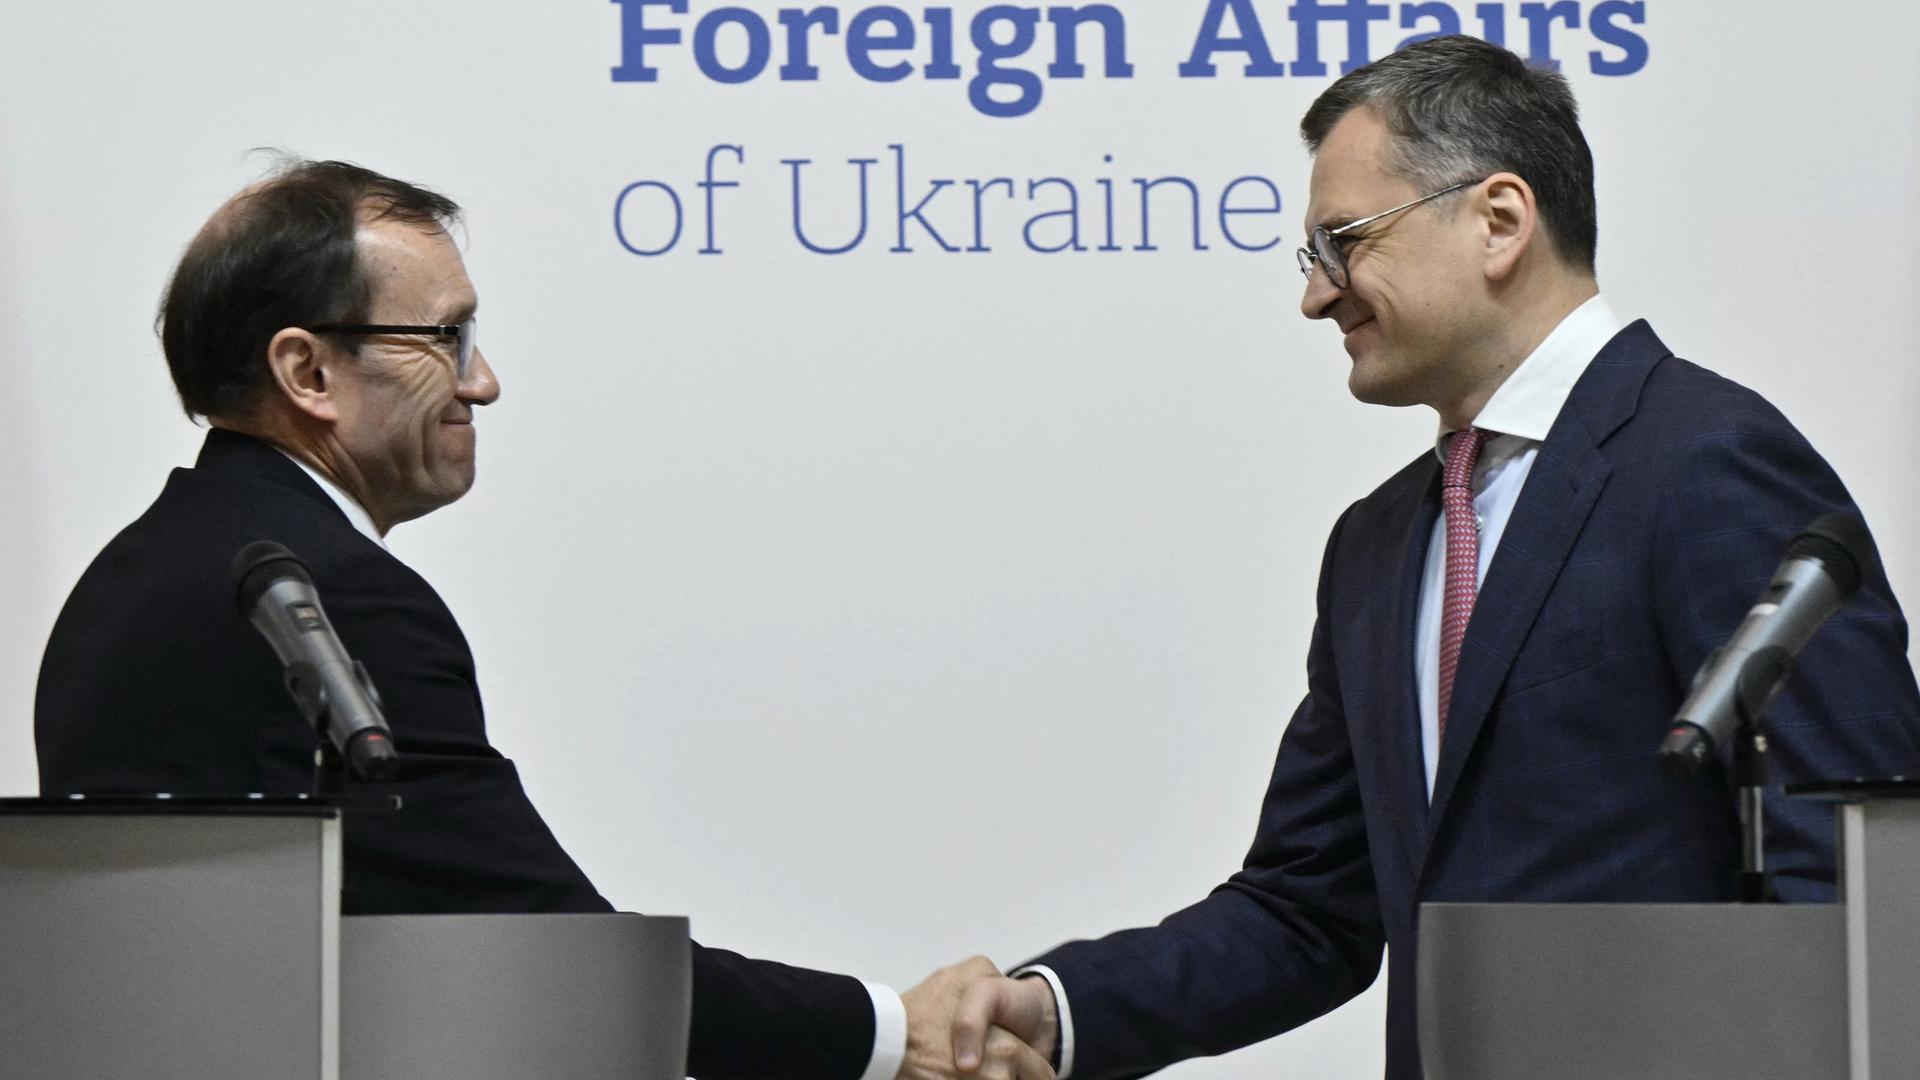 Der ukrainische Außenminister Dmytro Kuleba (R) gibt dem norwegischen Außenminister Espen Barth Eide (L) die Hand.